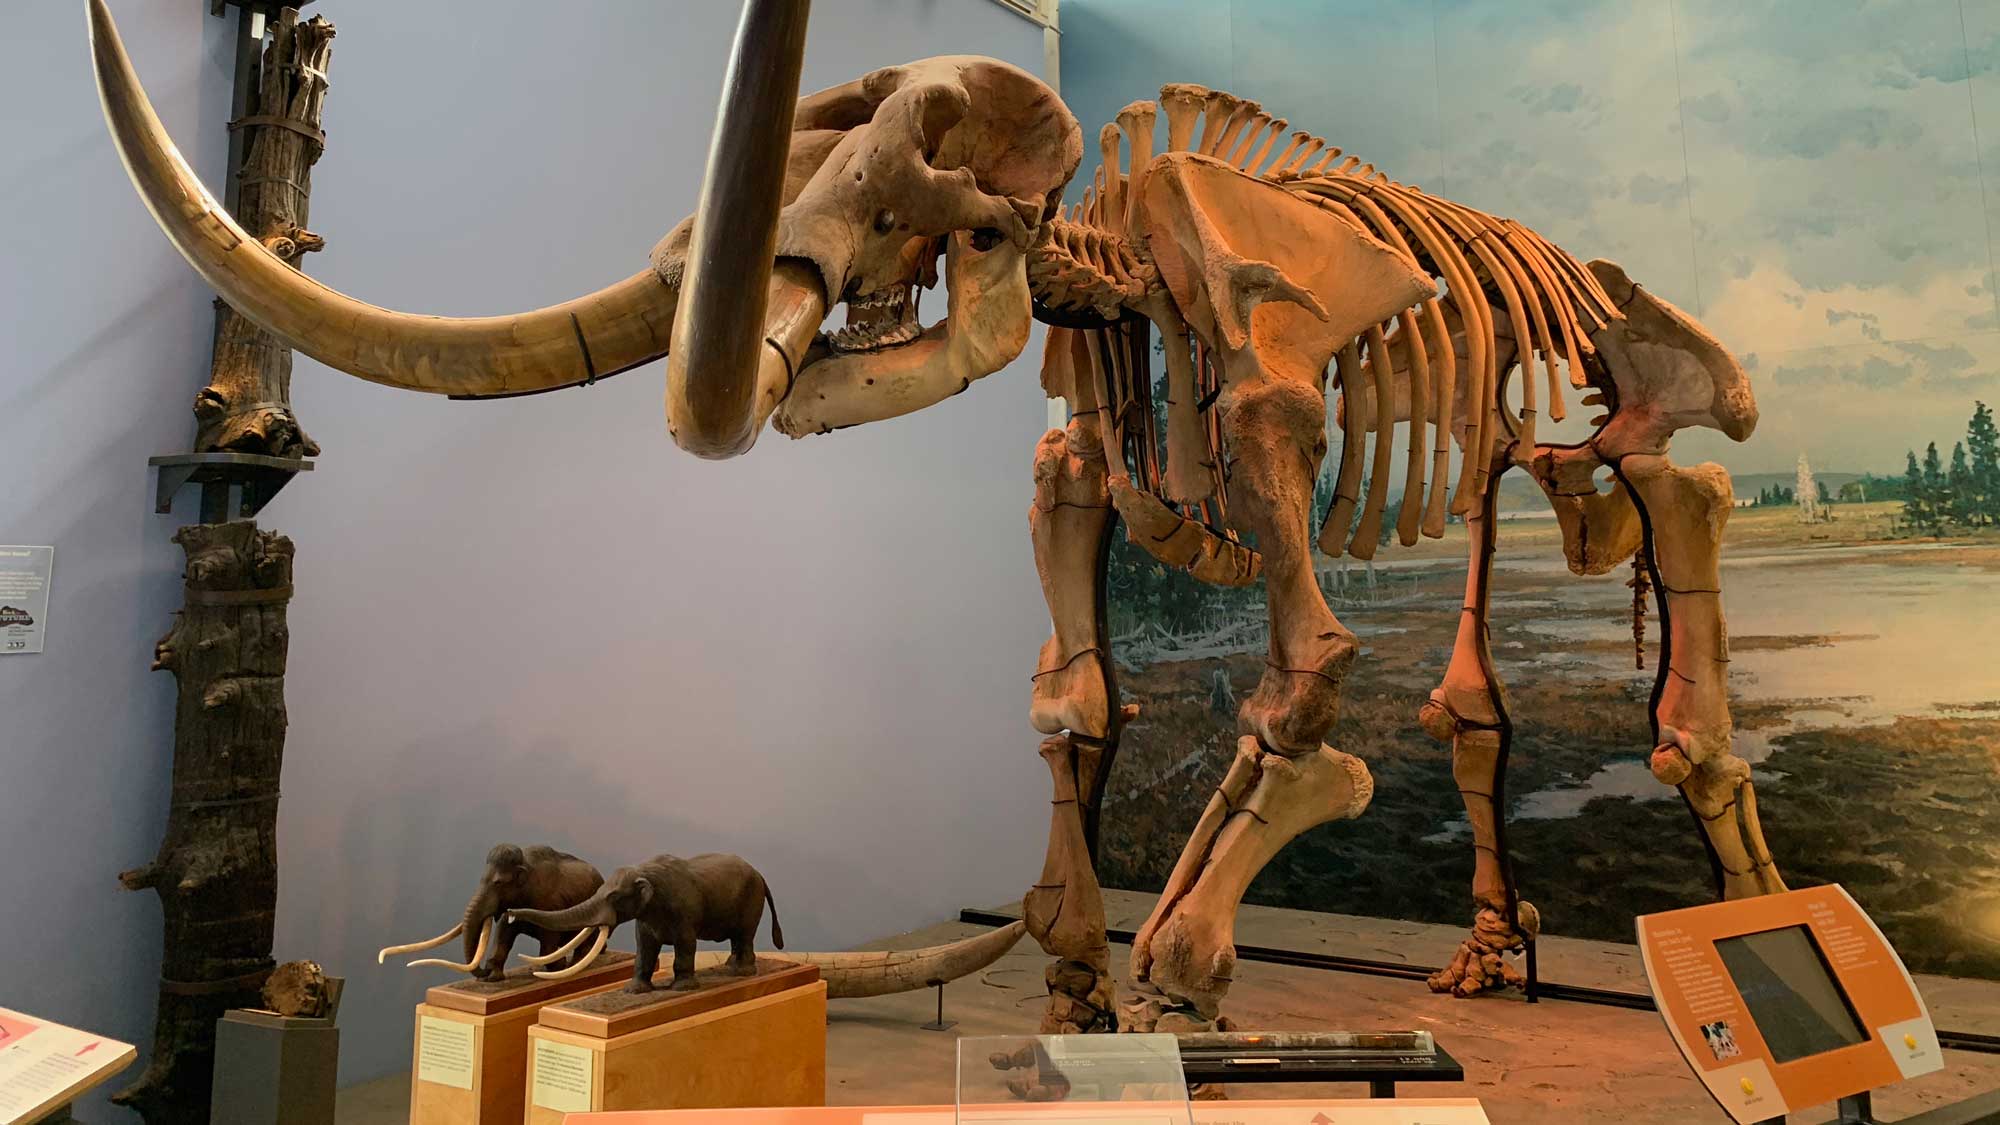 Photograph of the Hyde Park mastodon.